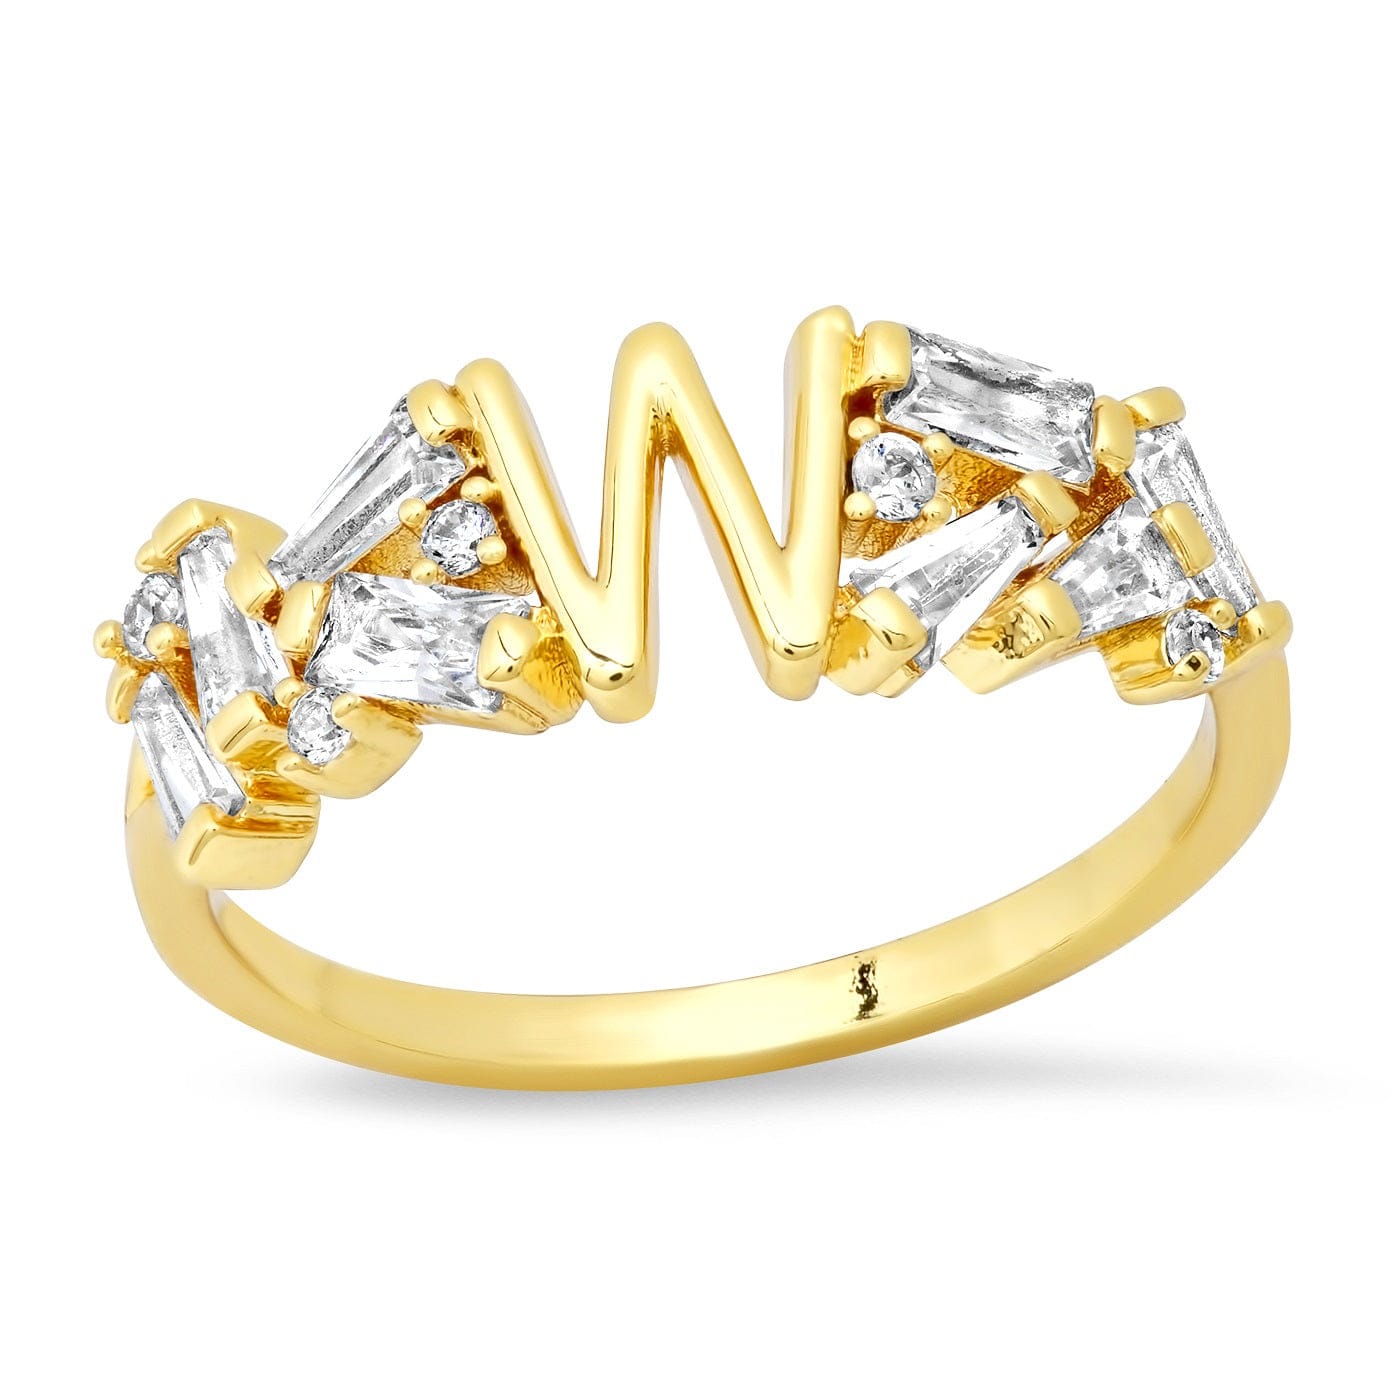 TAI JEWELRY Rings 6 / W Baguette Initial Ring